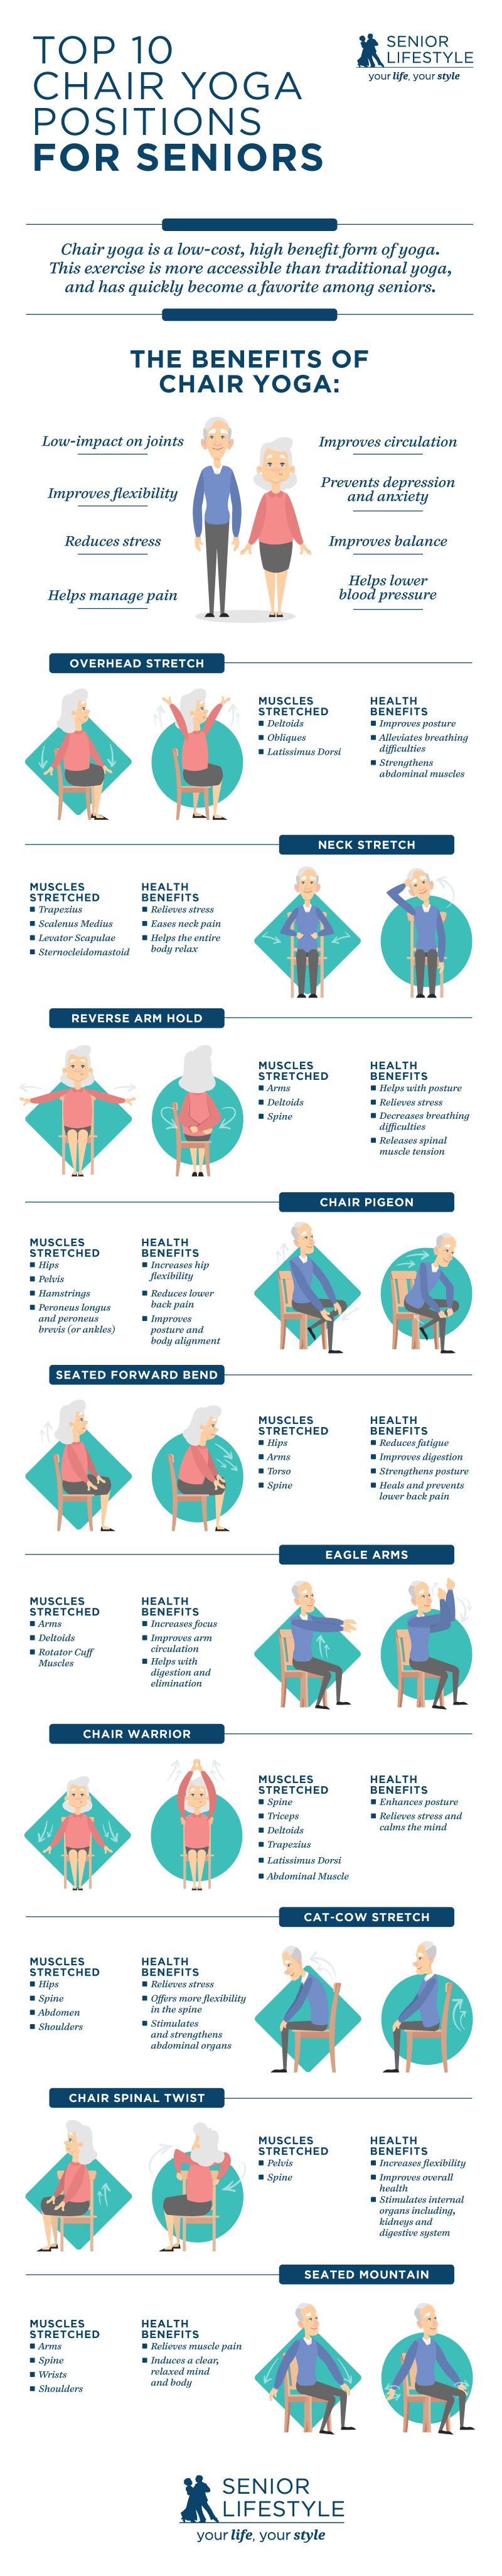 chair yoga exercises for seniors